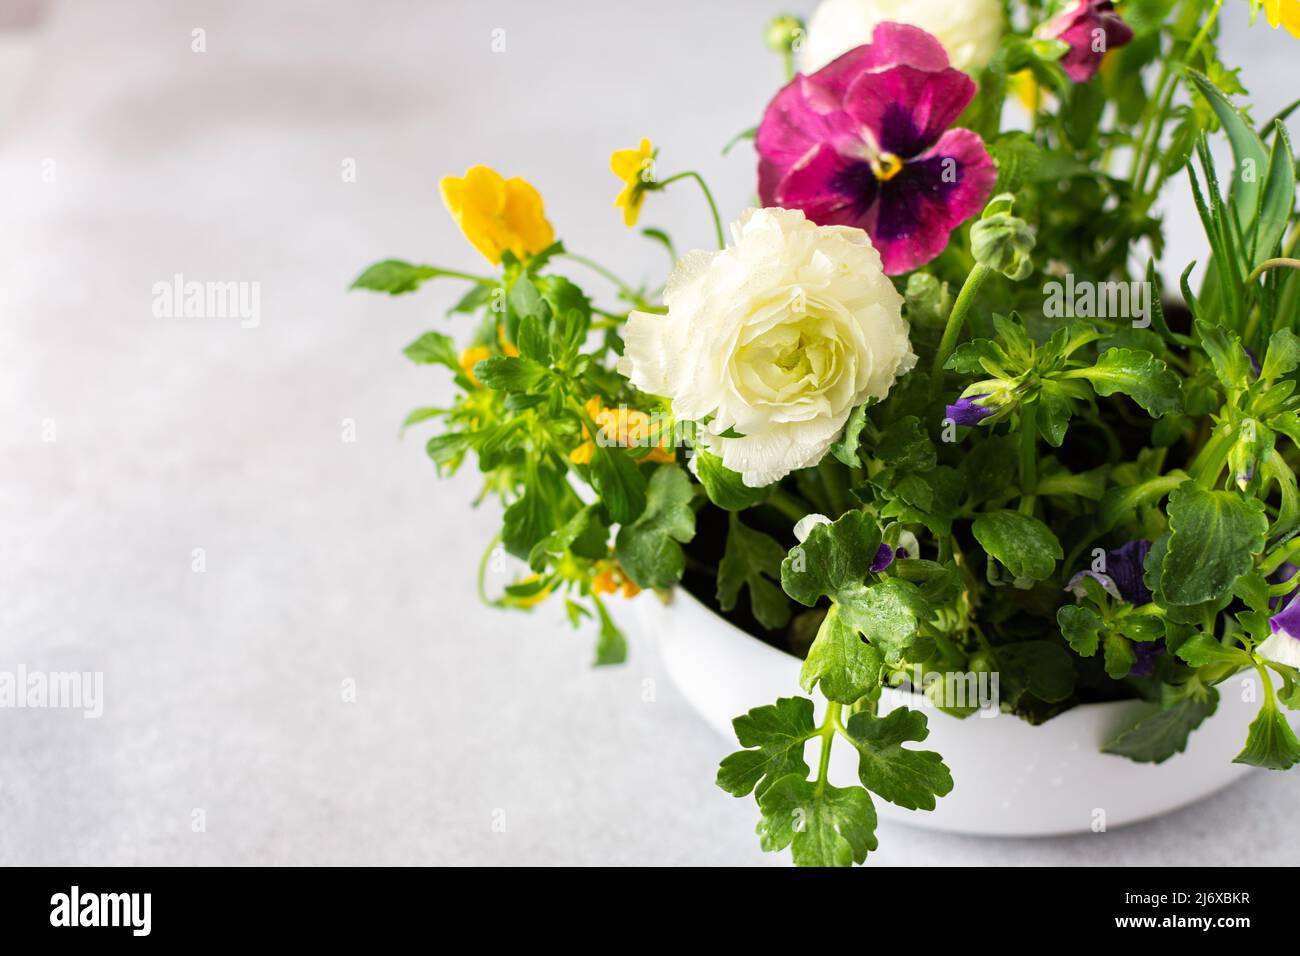 Vase rond blanc avec fleurs de printemps et d'été Ranunculus et Muscari, pétunias et pansies dans le sol sur fond gris Banque D'Images